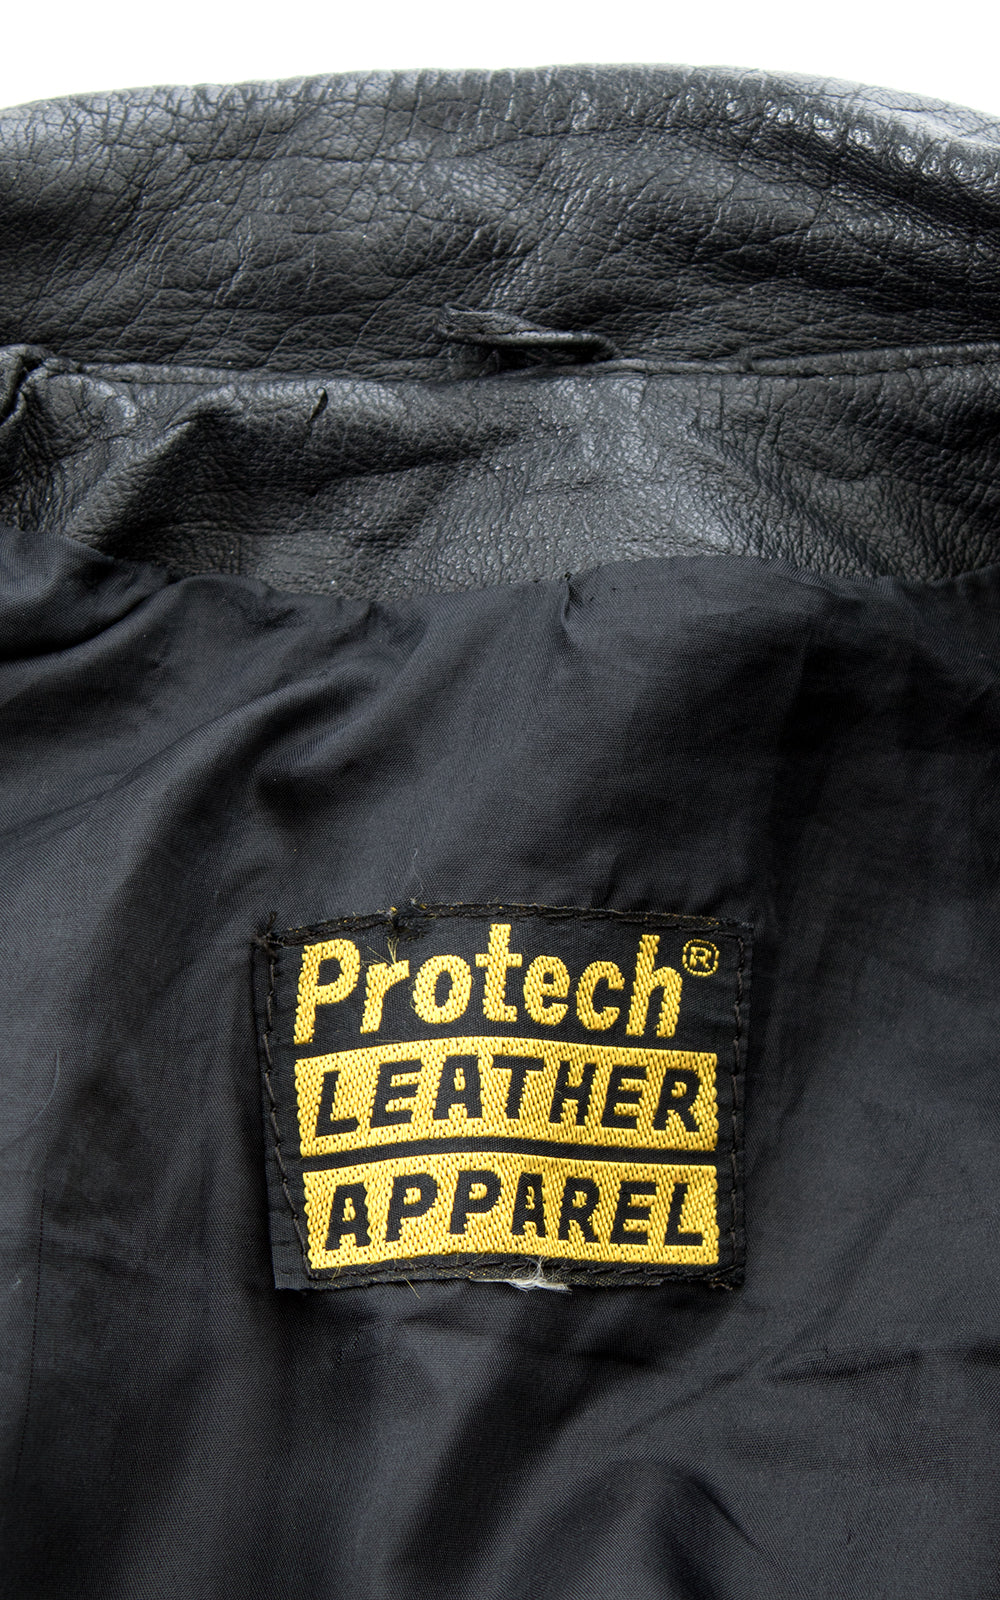 1980s Black Leather Cropped Moto Jacket | large – Birthday Life Vintage